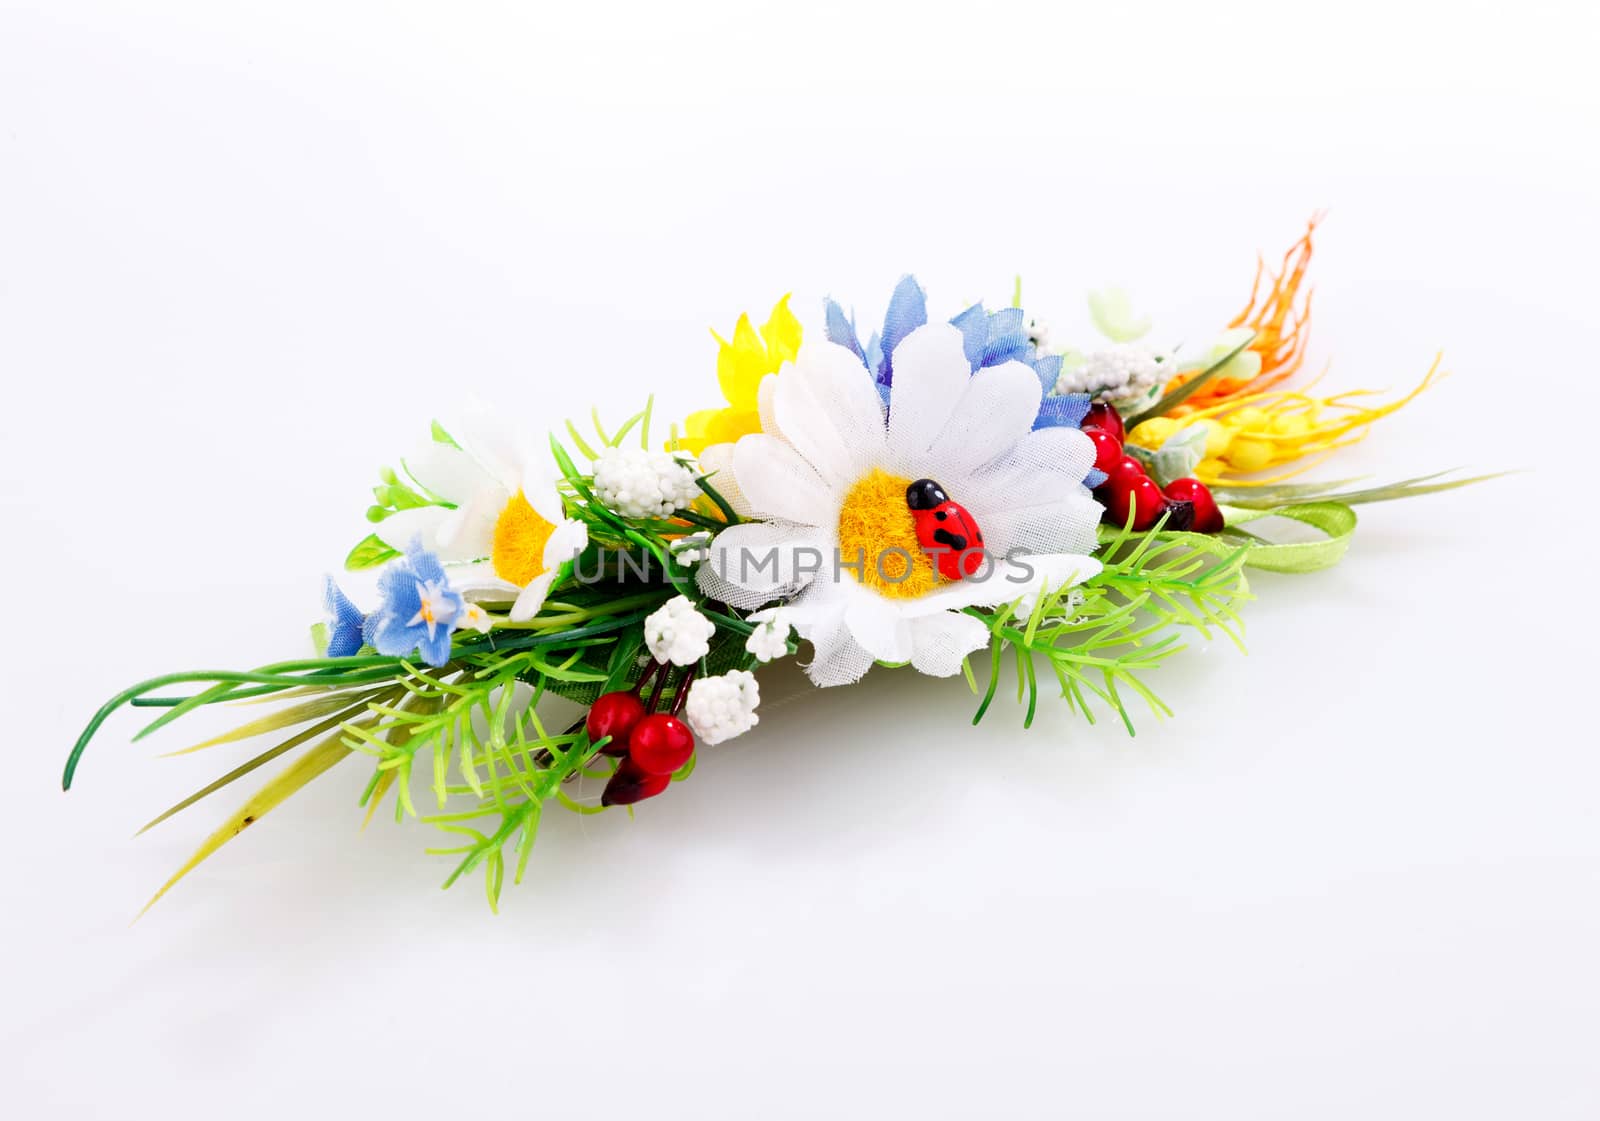 flower arrangement on a white background